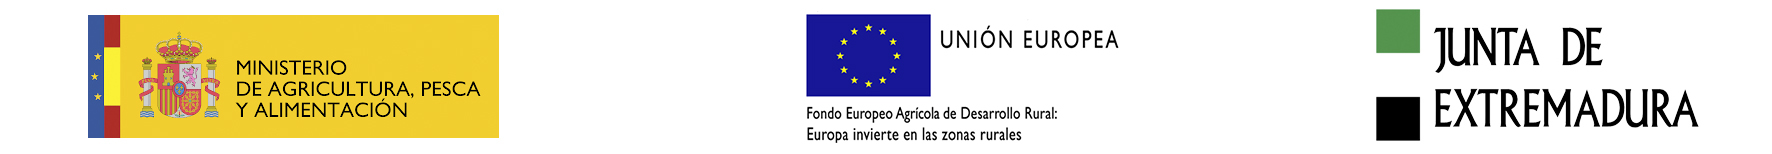 MINISTERIO DE AGRICULTURA, PESCA Y ALIMENTACION - UNION EUROPEA - JUNTA DE EXTREMADURA